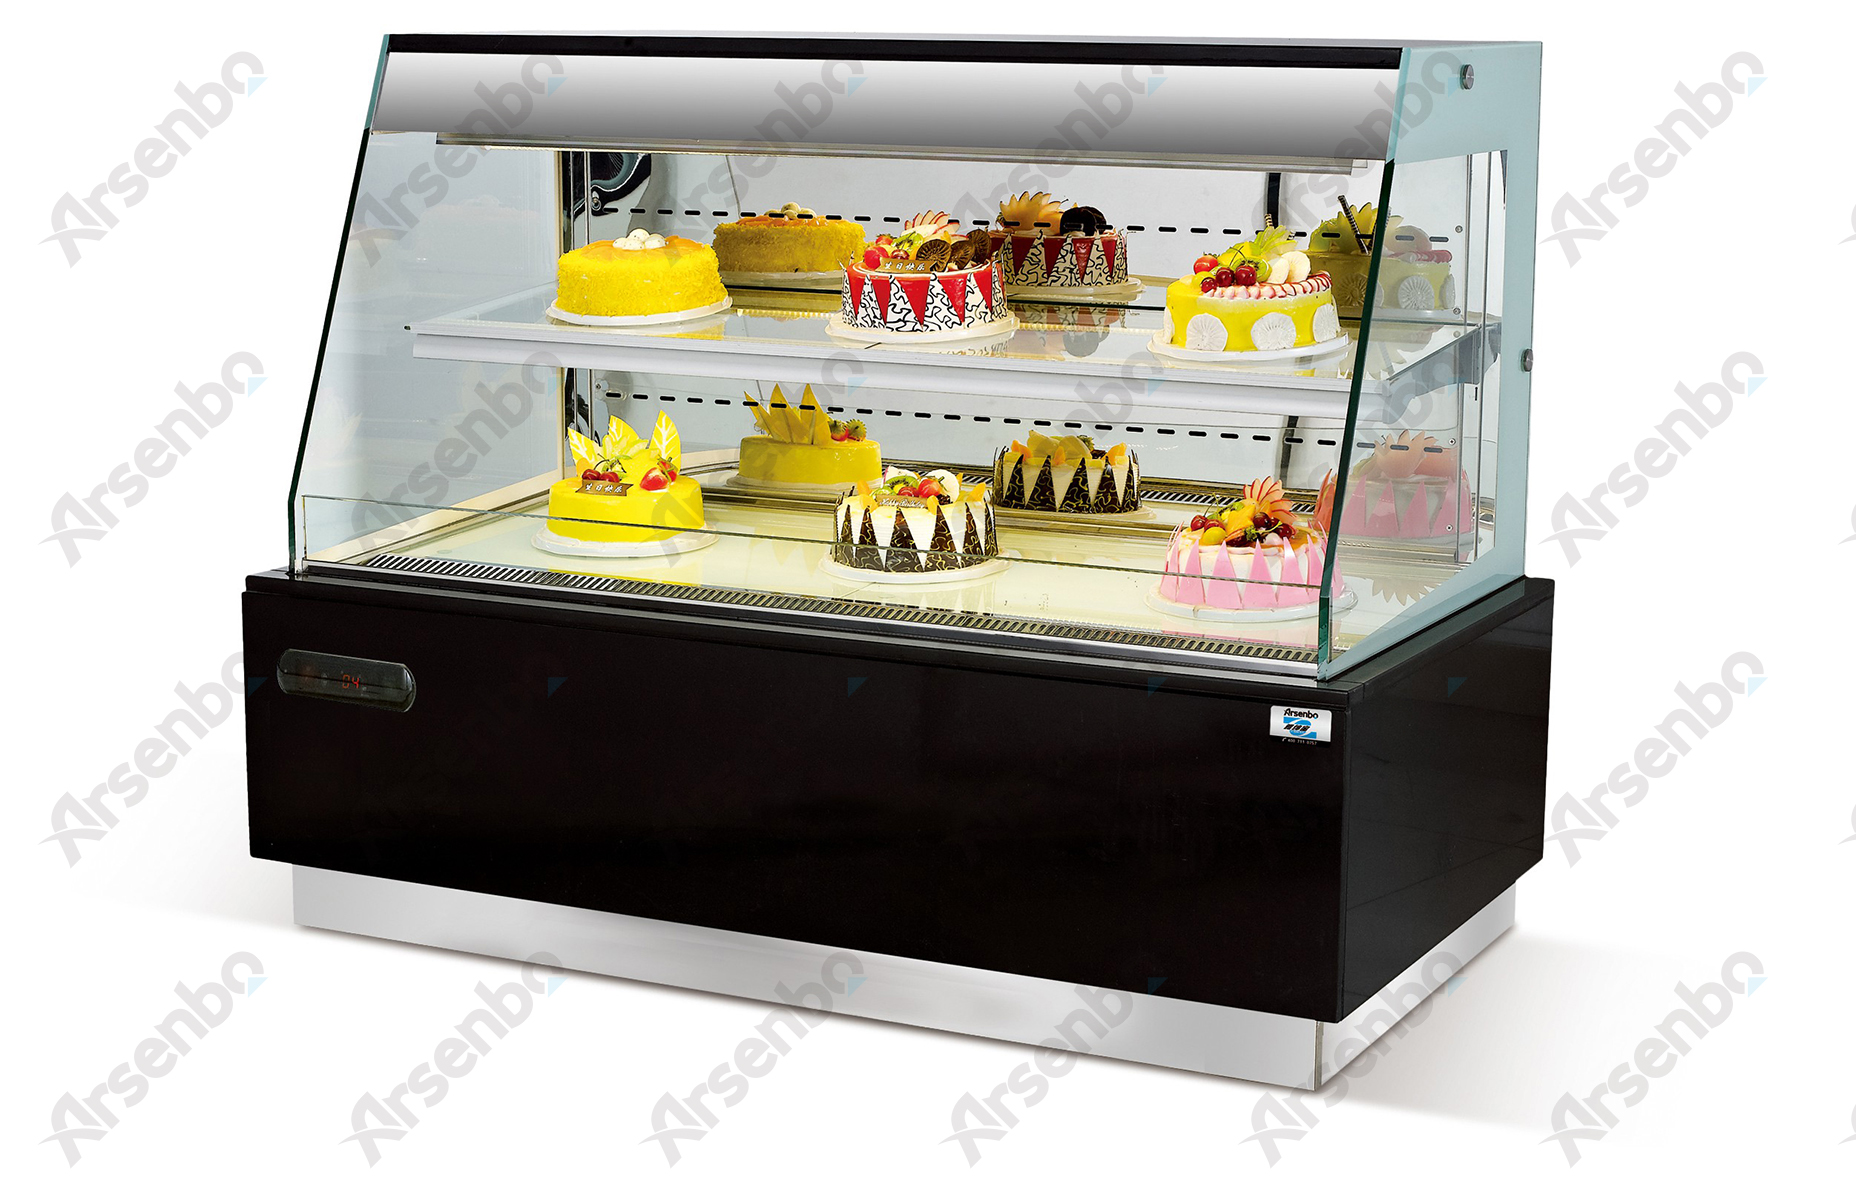 供应KFB18/蛋糕展示柜/面包店设备/超市冷藏柜/冷藏柜价格/出口蛋糕柜图片